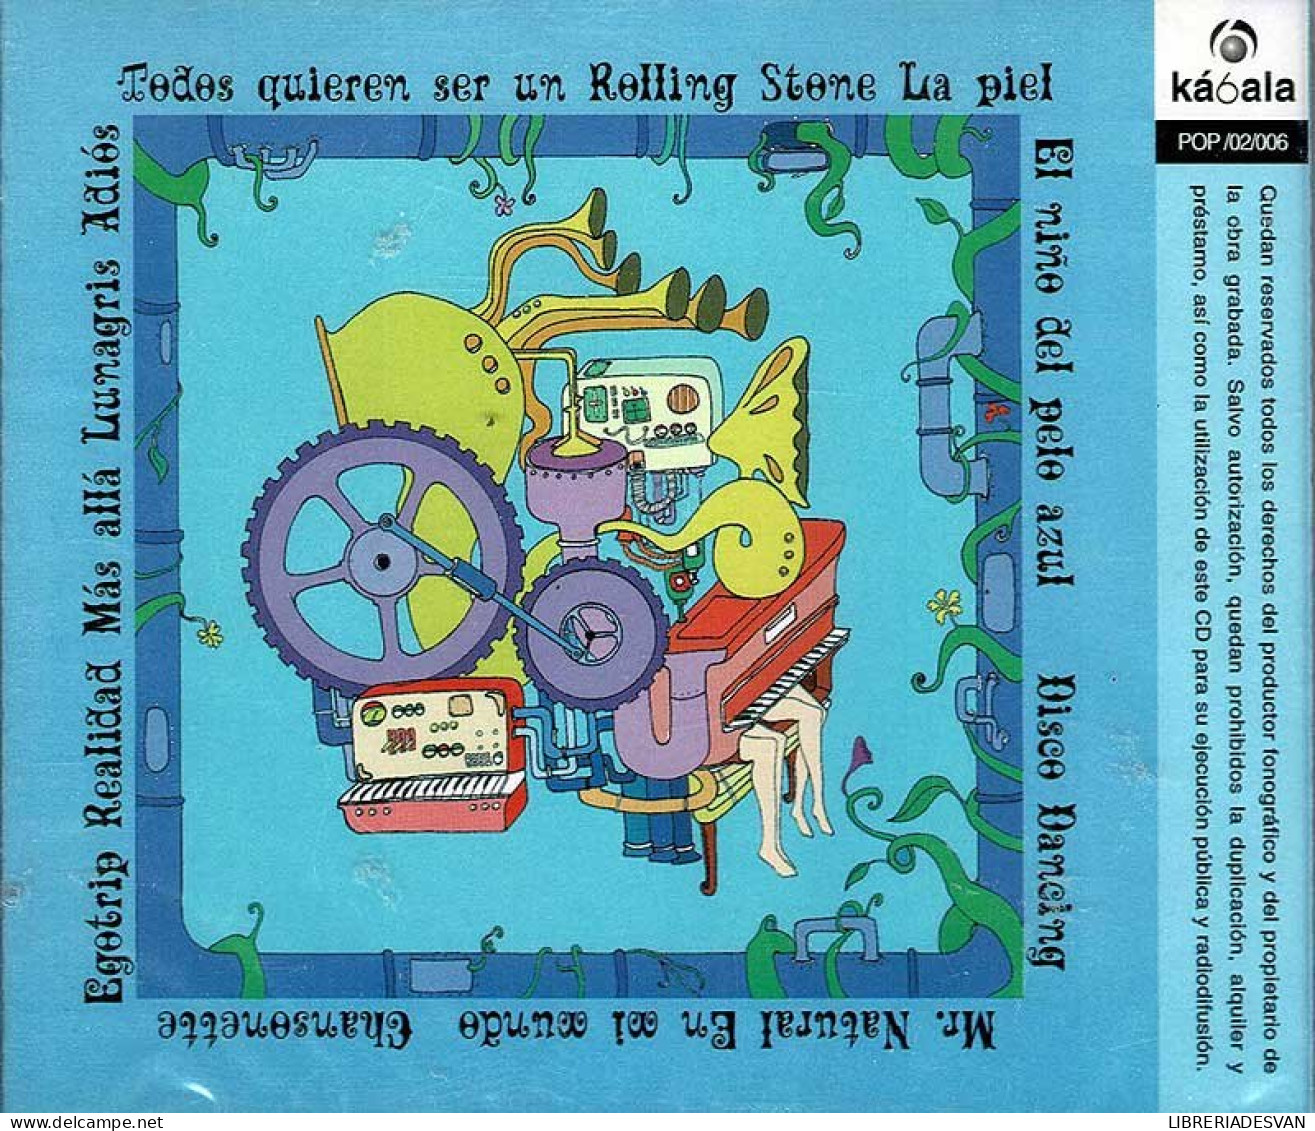 Harry Octopus - Rock'n'Roll Karma. CD - Disco & Pop